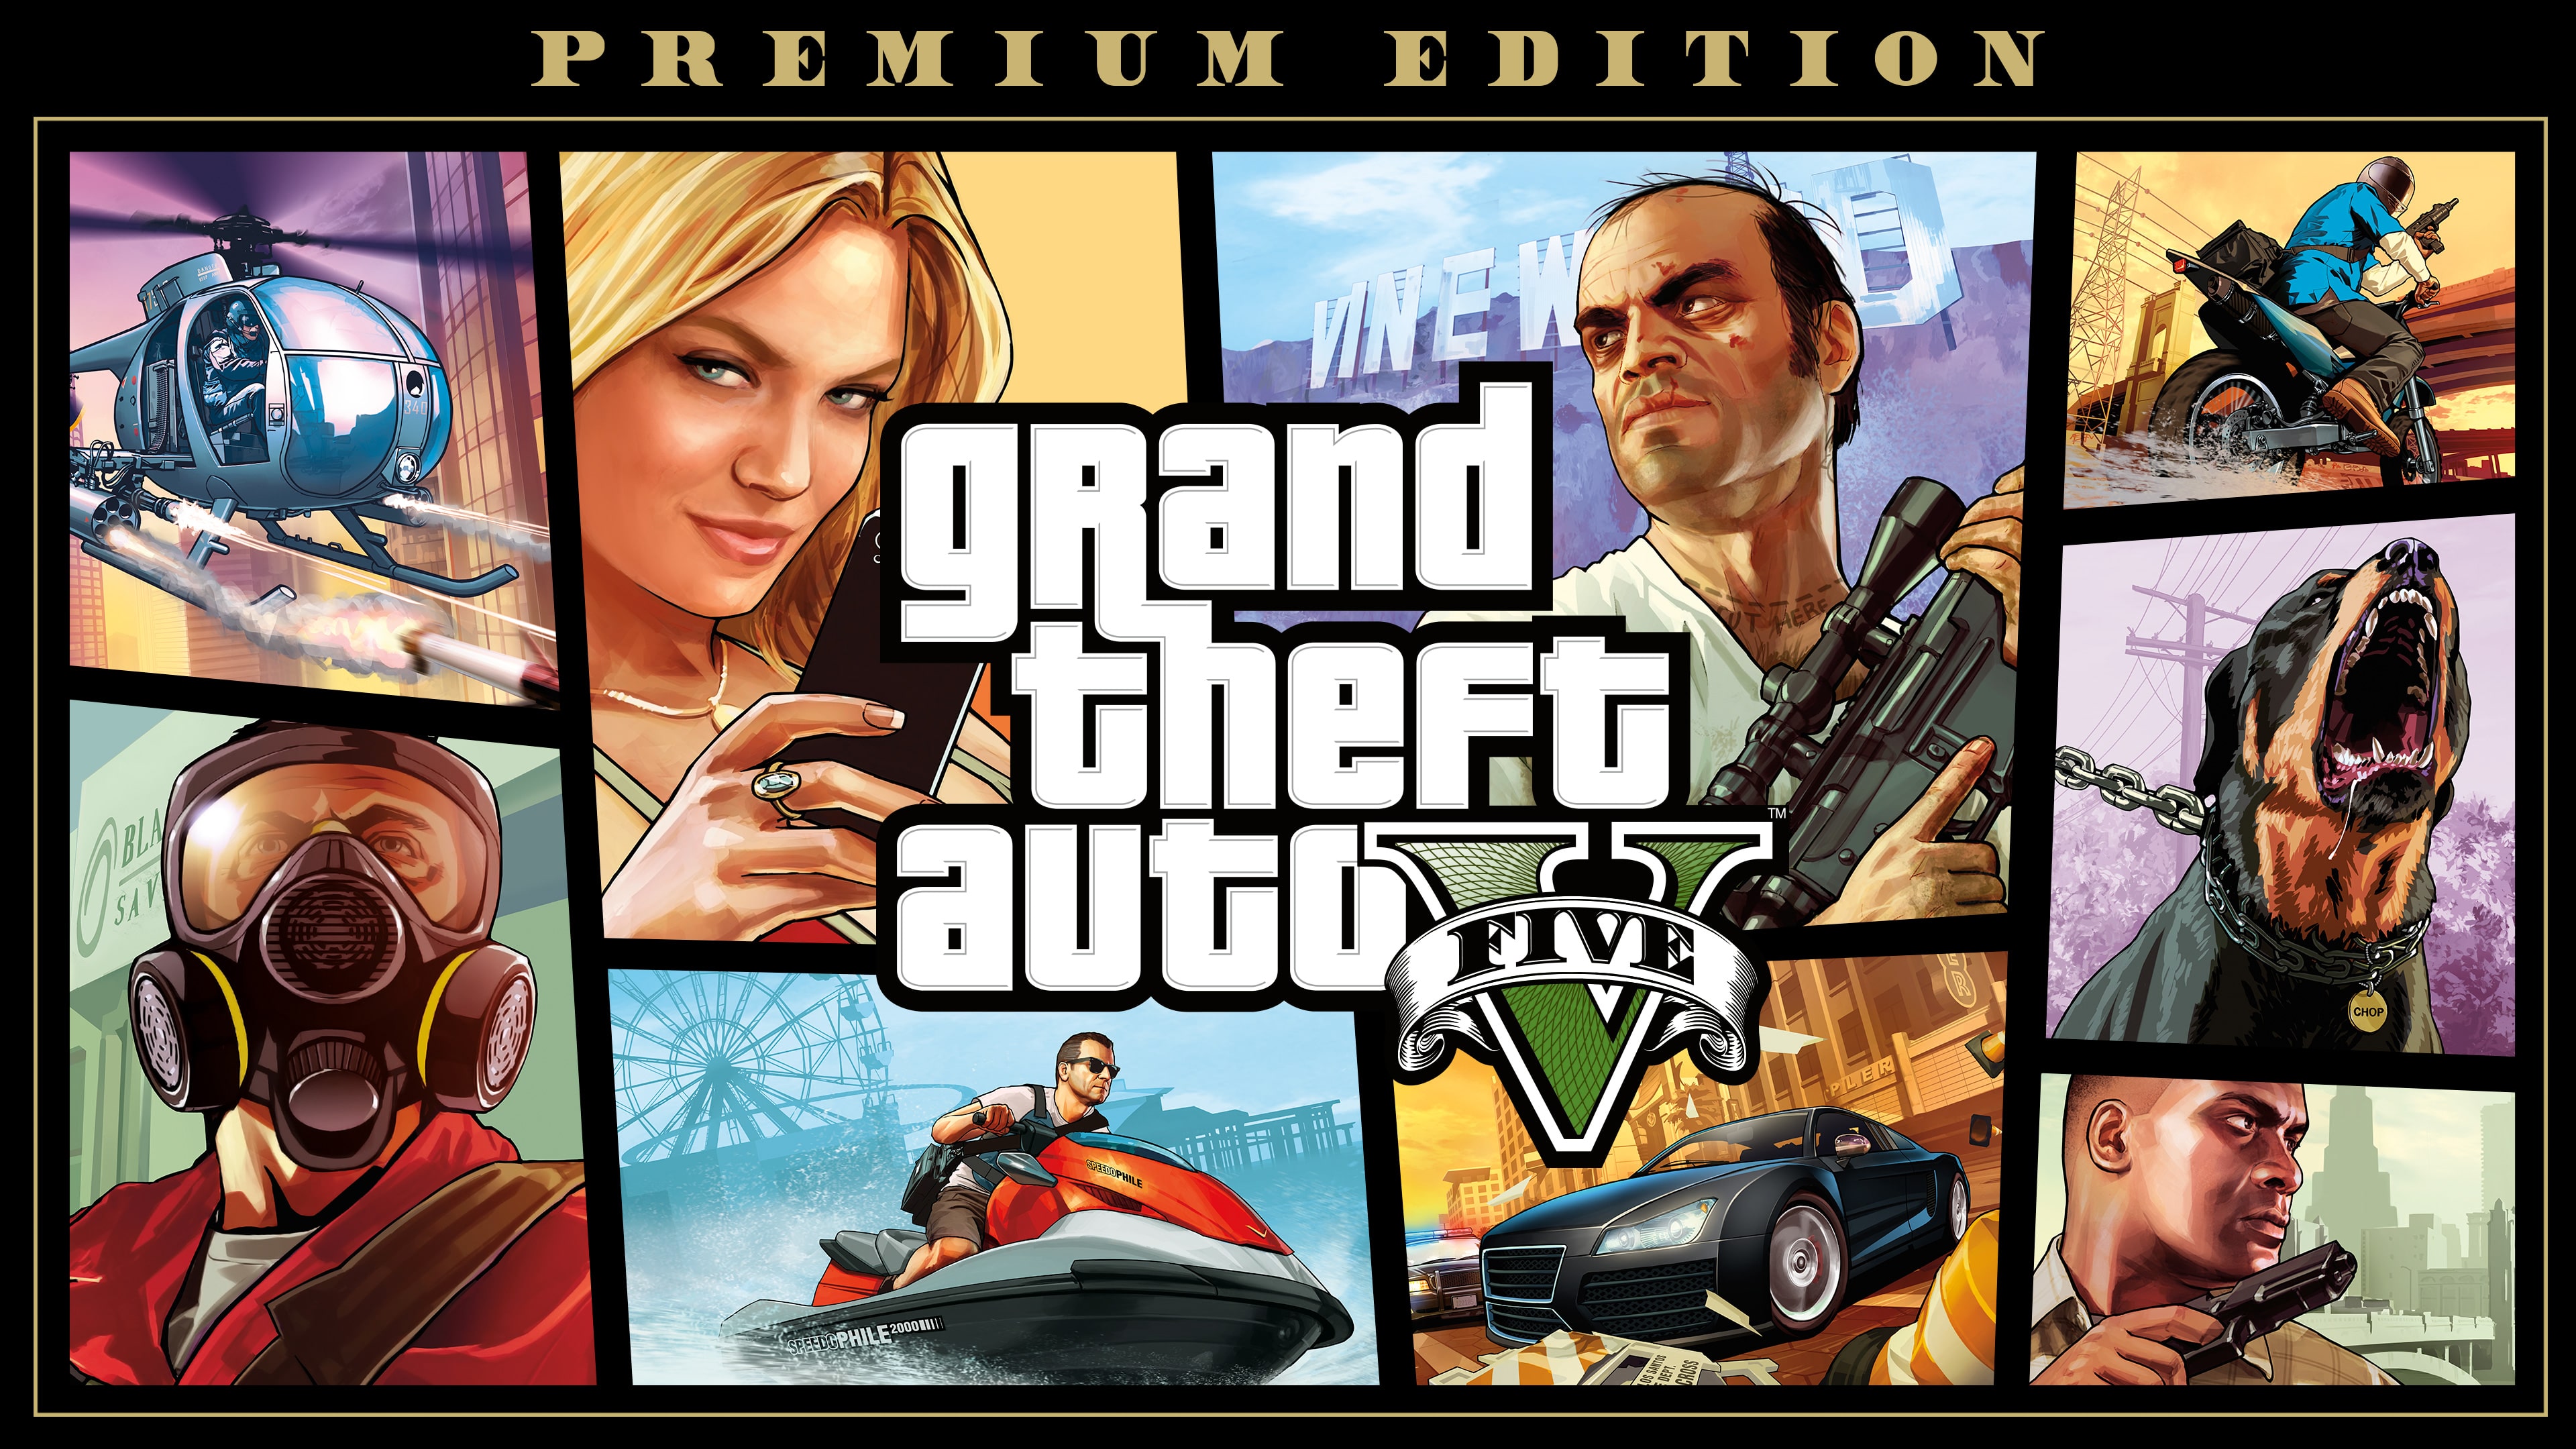 vedvarende ressource Tilbageholde chikane Grand Theft Auto V: Edição Premium